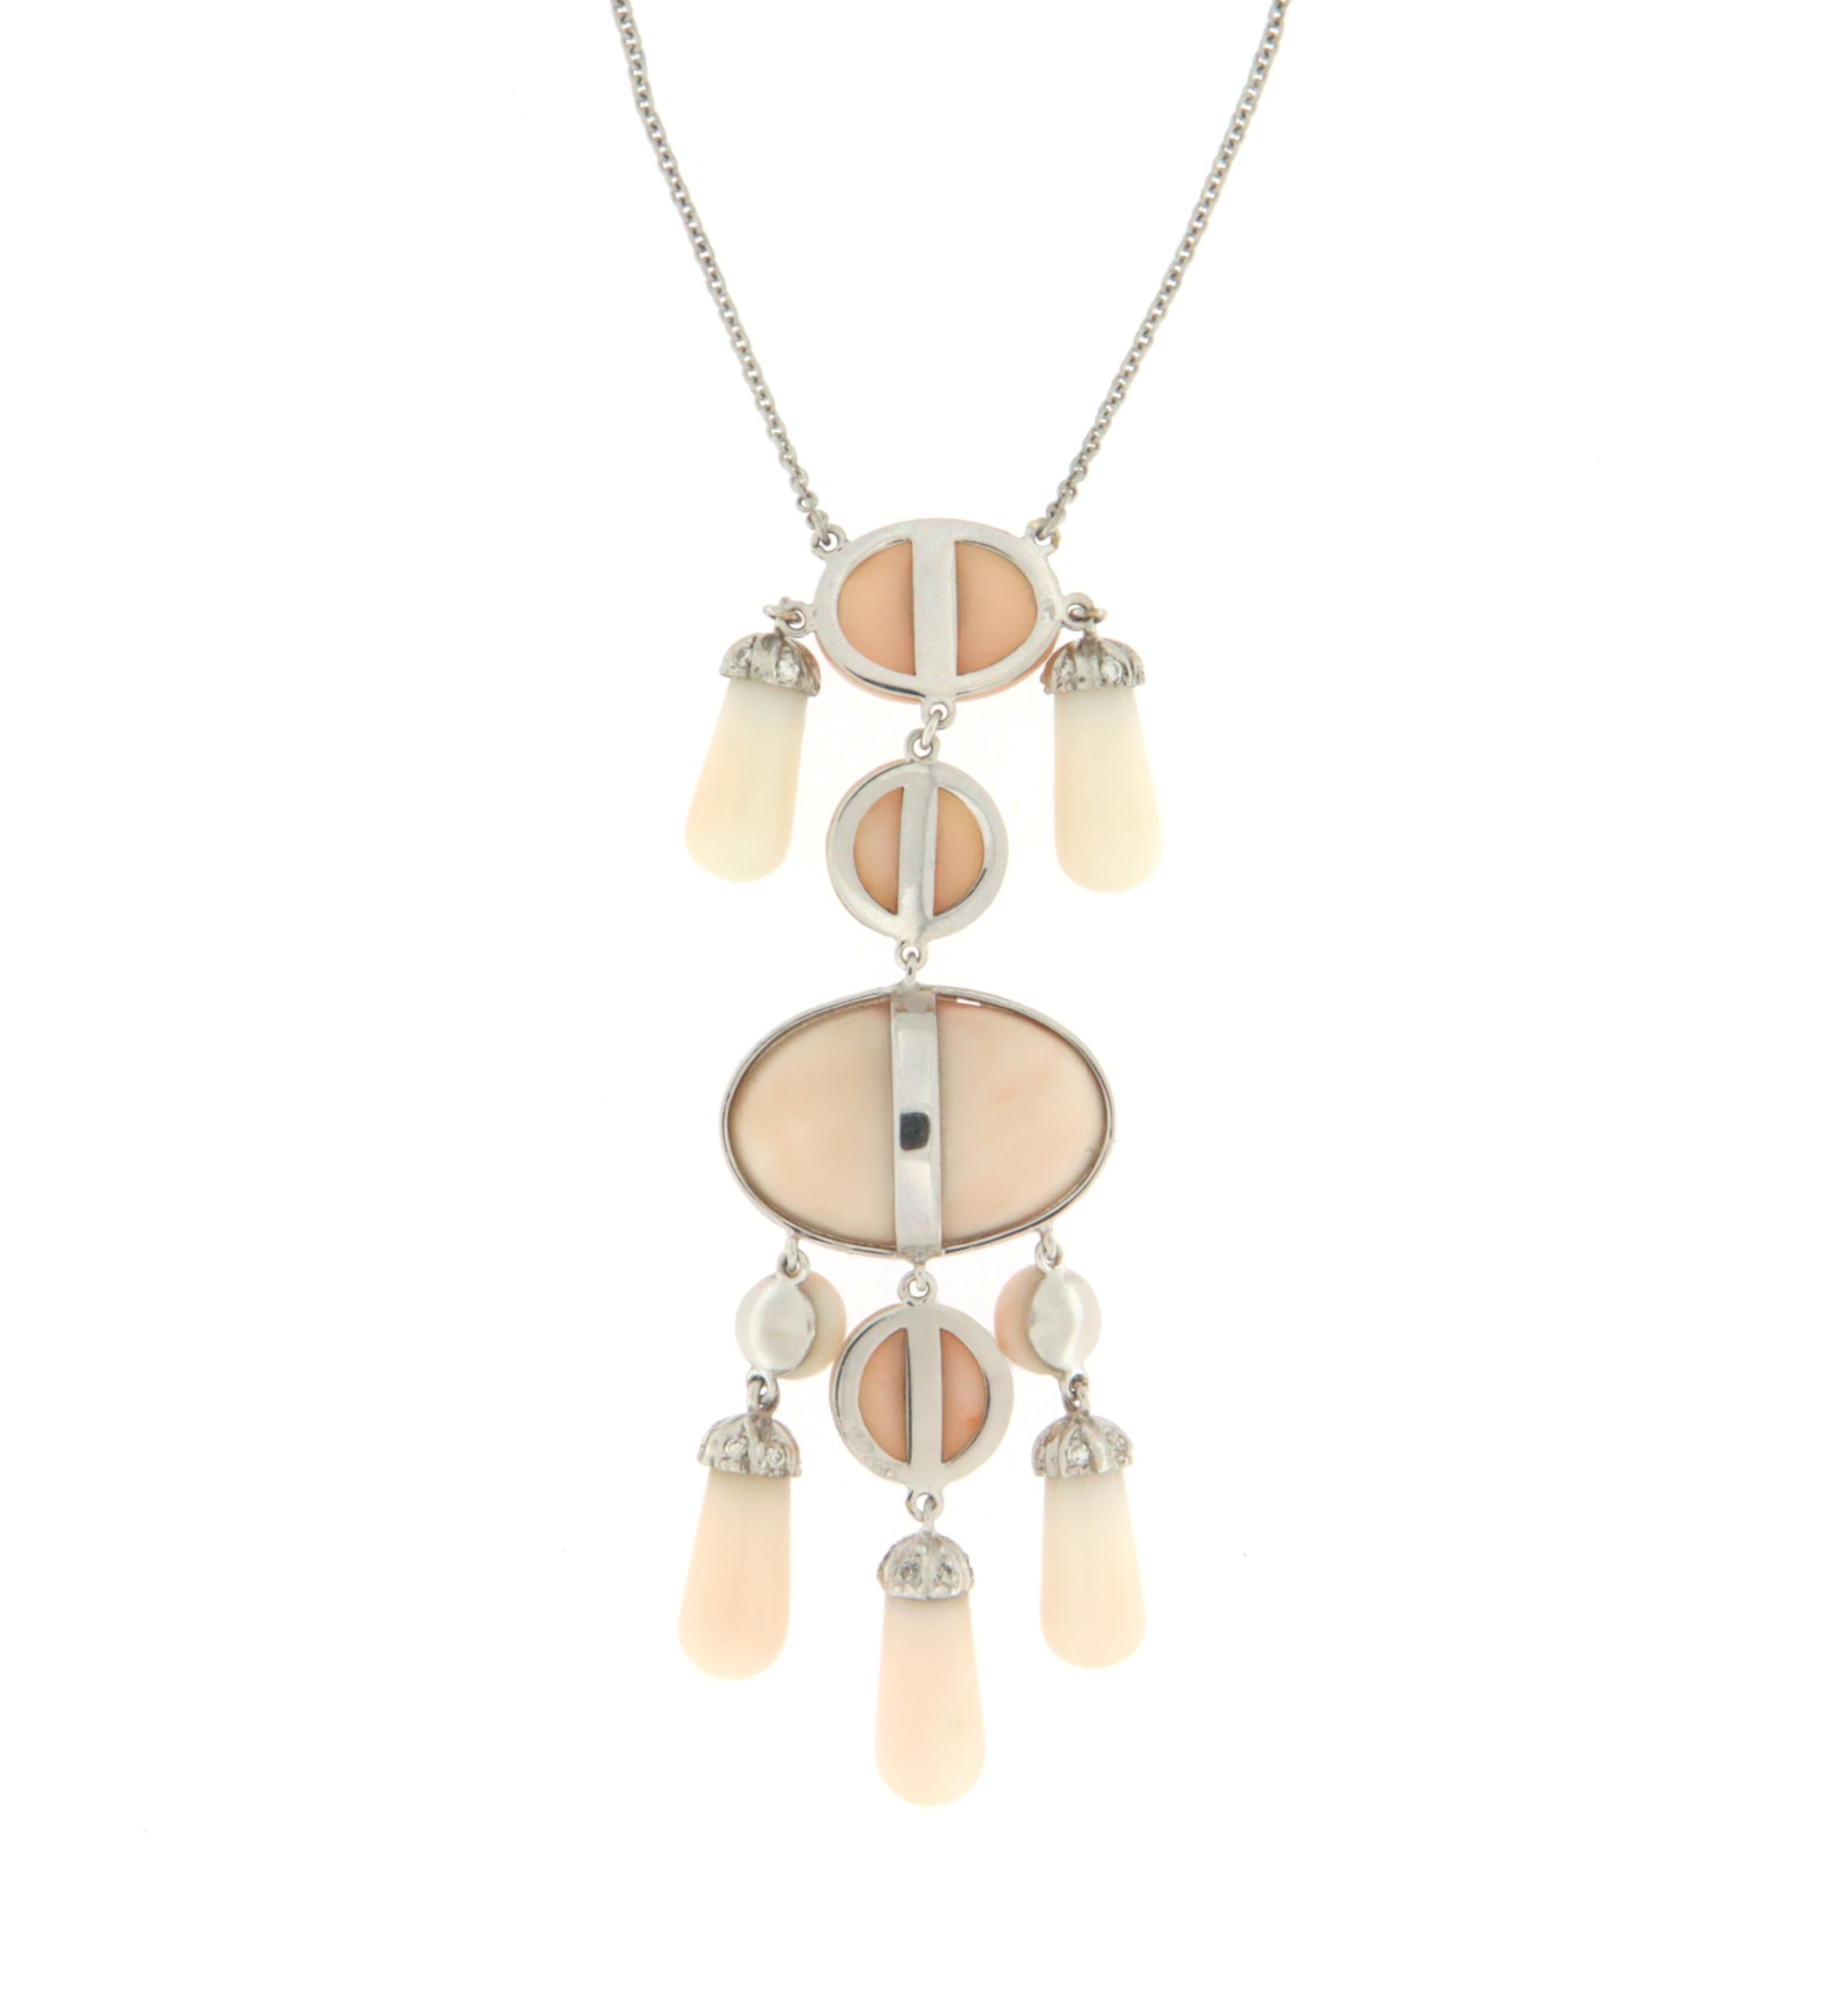 Brilliant Cut Pink Coral Diamonds 18 Karat White Gold Pendant Necklace For Sale